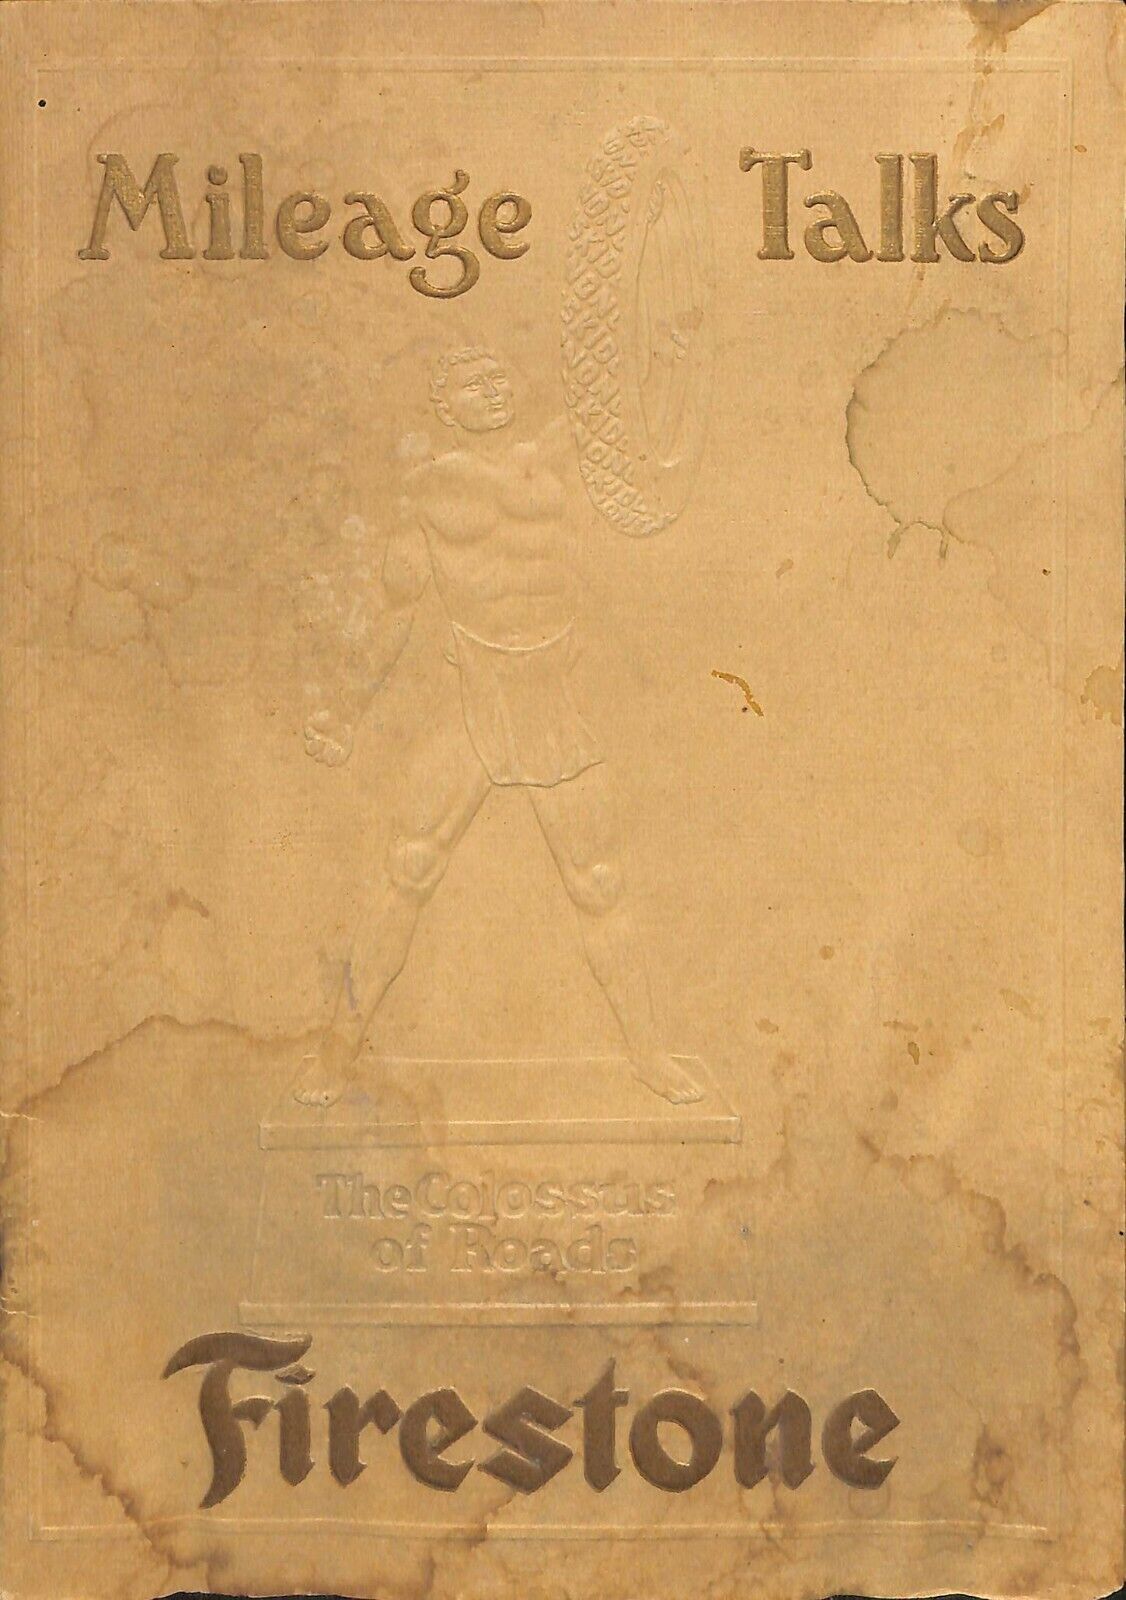 Firestone Mileage Talks Illustrated Advertising Booklet Vintage Akron OH